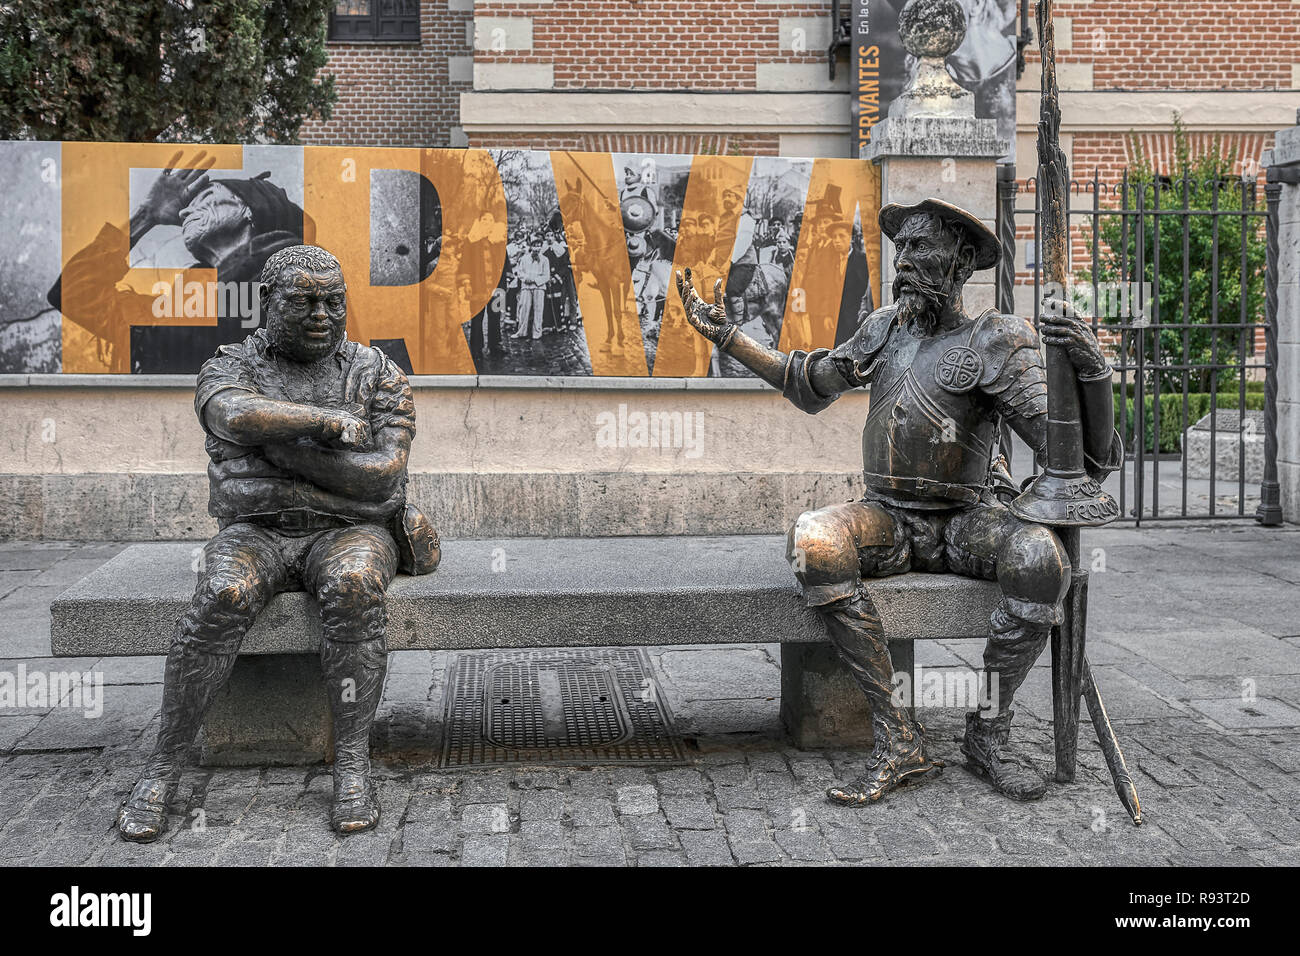 Statue Von Don Quijote Und Sancho Panza Auf Einer Strasse Bank In Der Cervantes Museum Haus In Alcala De Henares Madrid Spanien Europa Stockfotografie Alamy